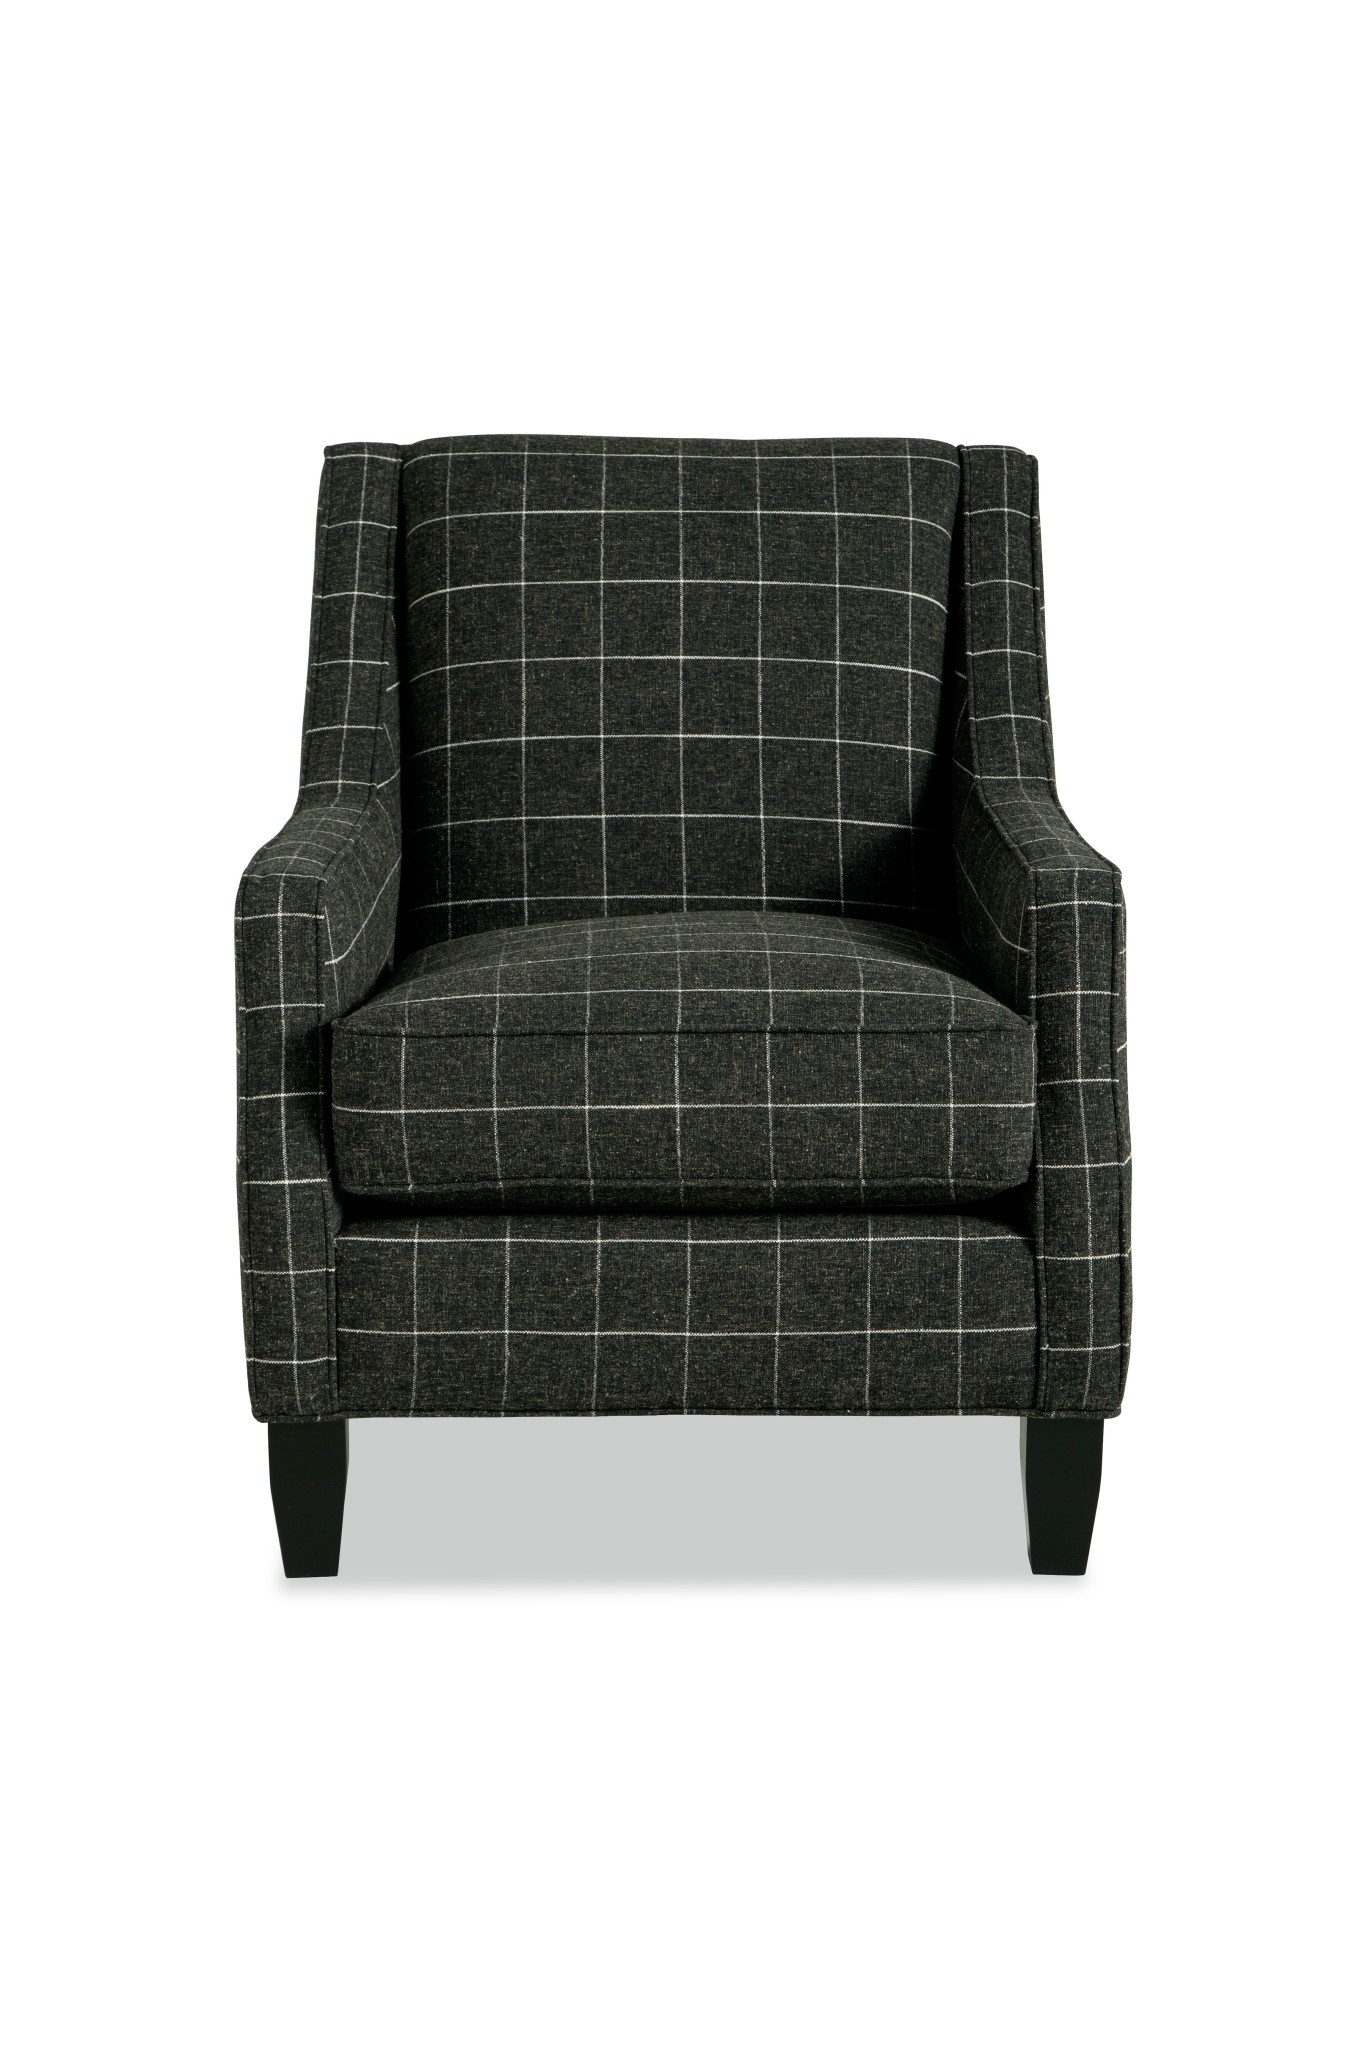 Craftmaster Furniture P029410BD Paula Deen Chair